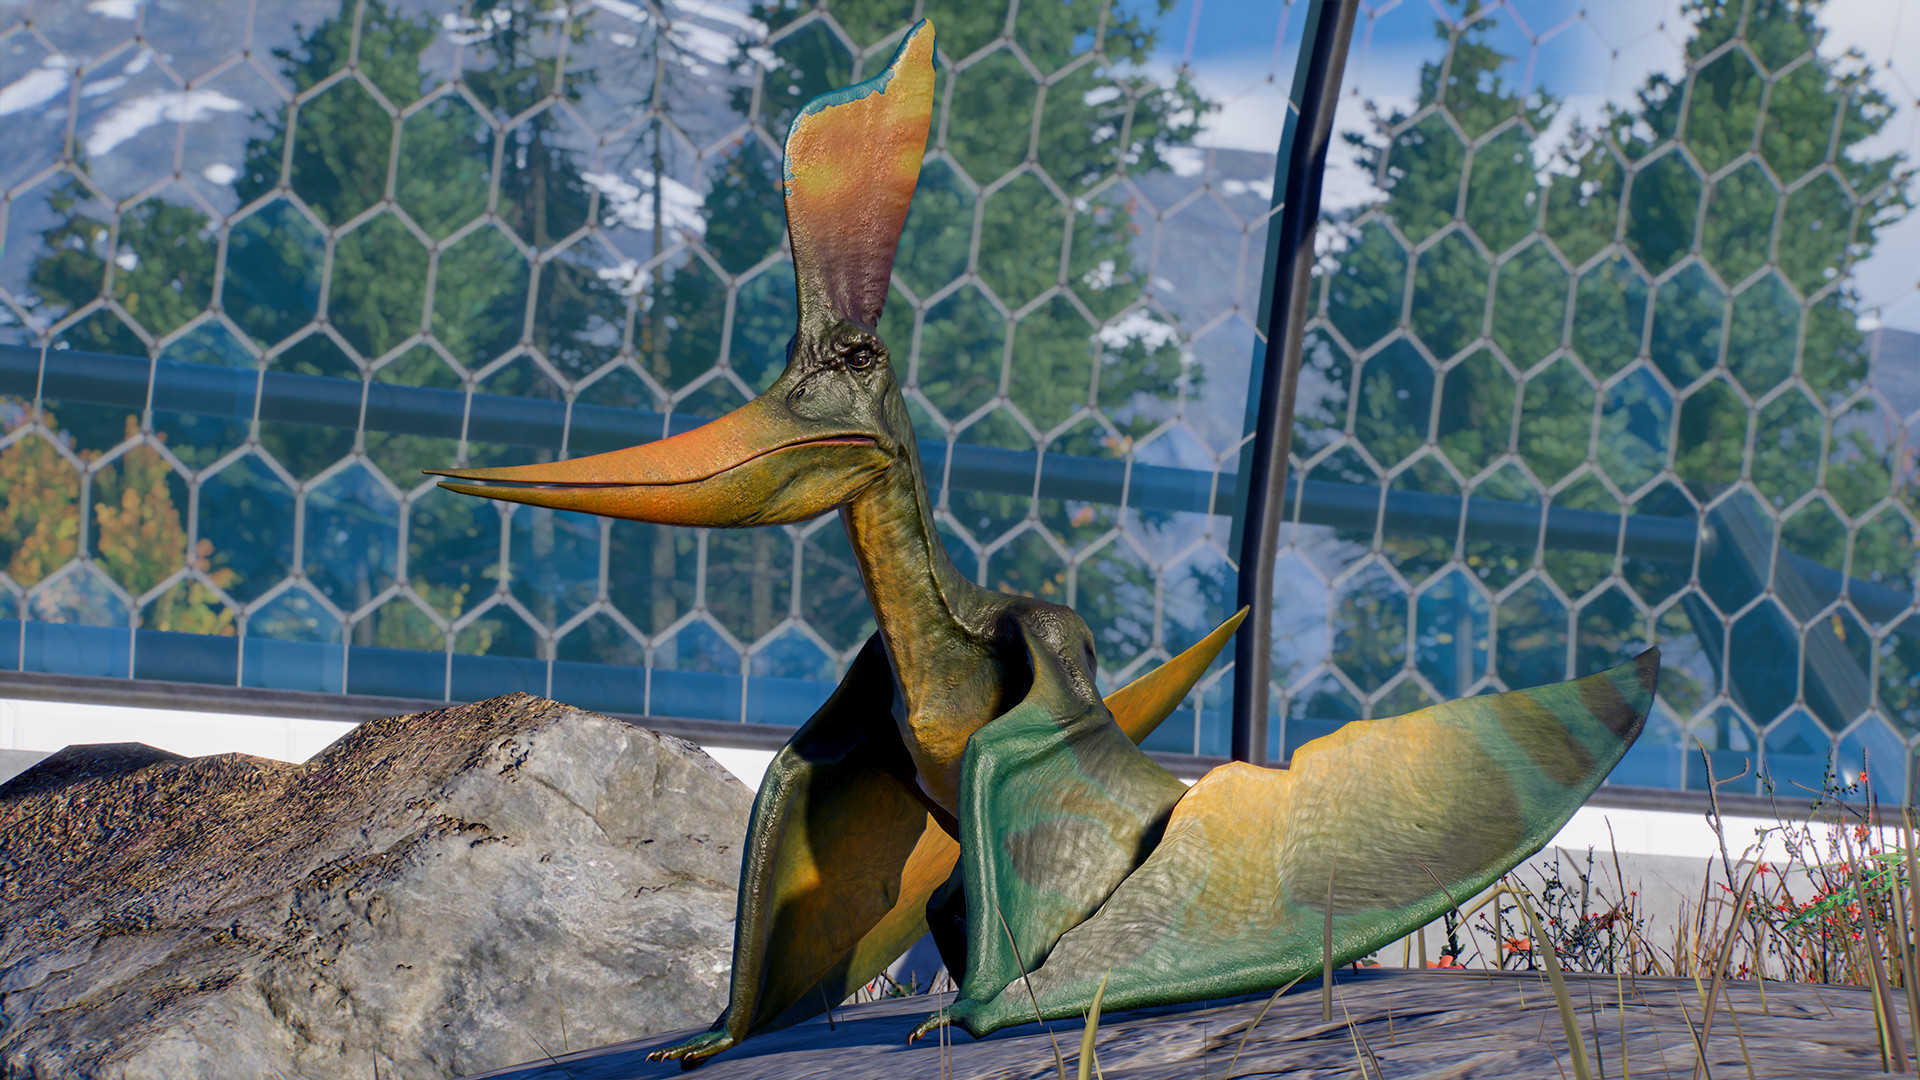 Jurassic World Evolution 2 - Deluxe Upgrade Pack DLC Steam CD Key